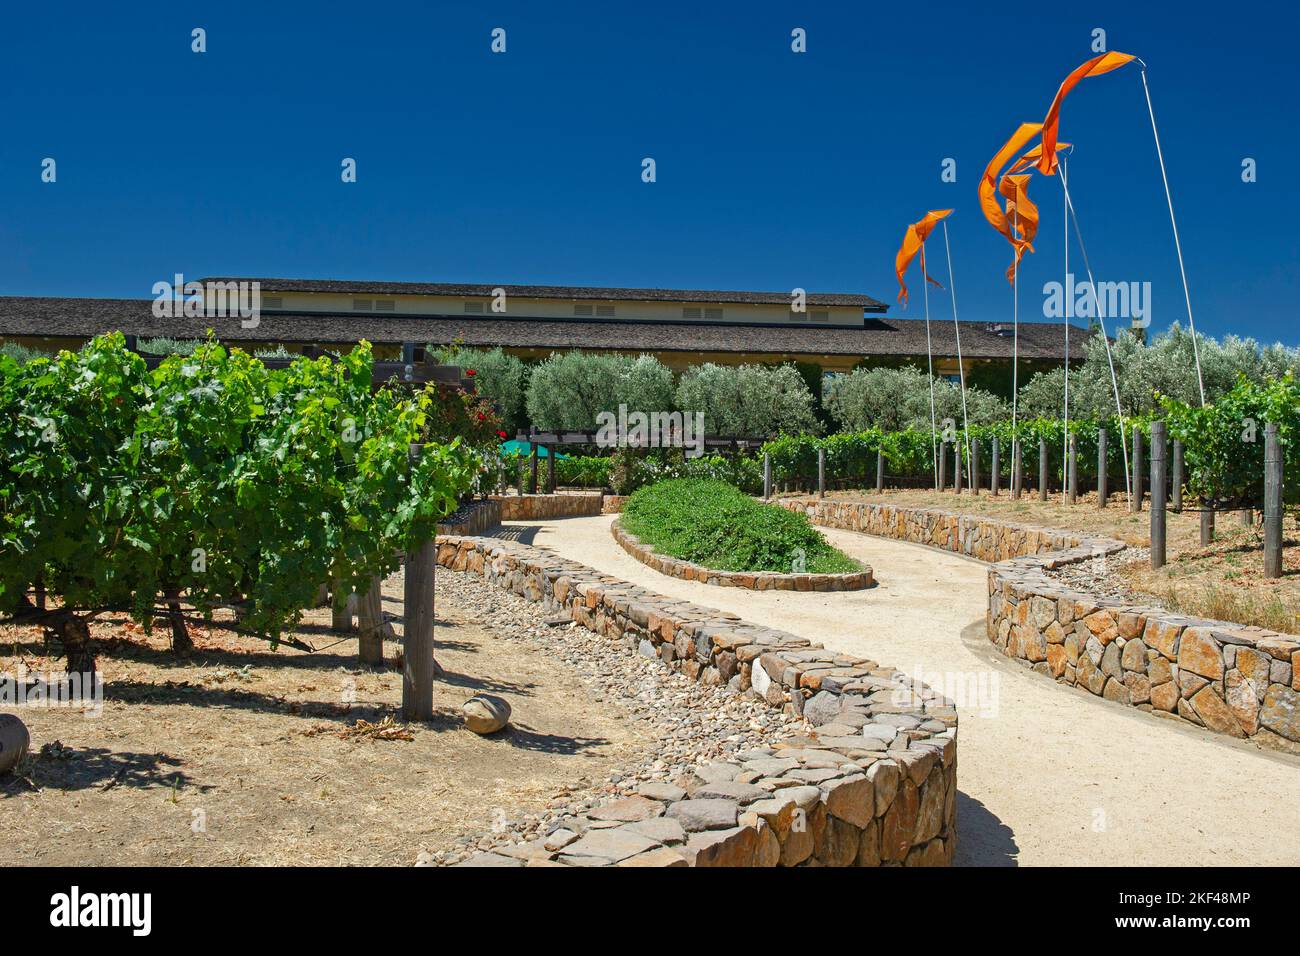 Blick auf die Weinreben der Robert Mondavi Winery, Napa Valley, Kalifornien, USA, Nordamerika Stock Photo